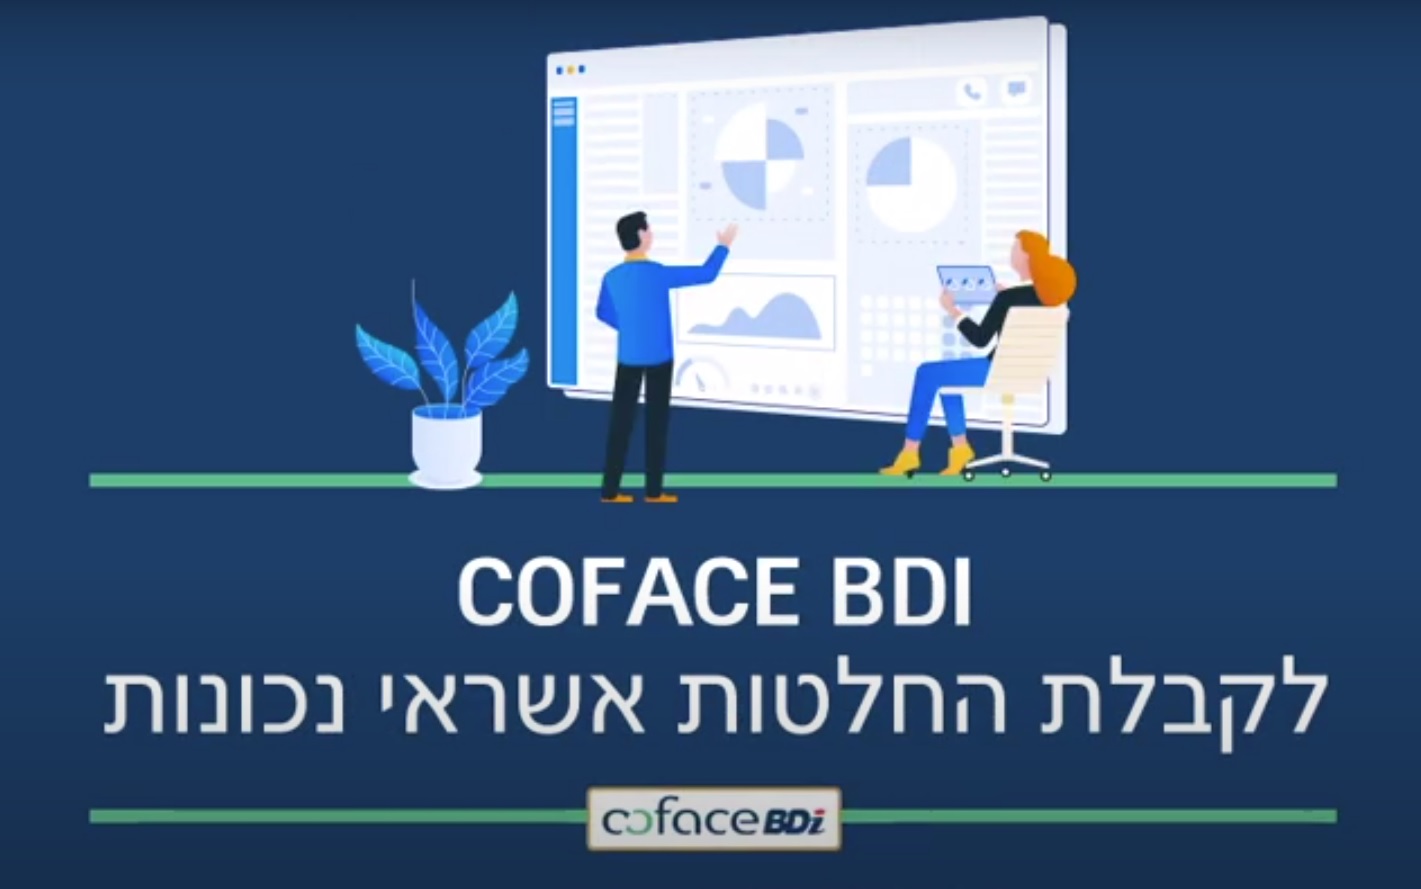 Coface BDI לקבלת החלטות אשראי נכונות